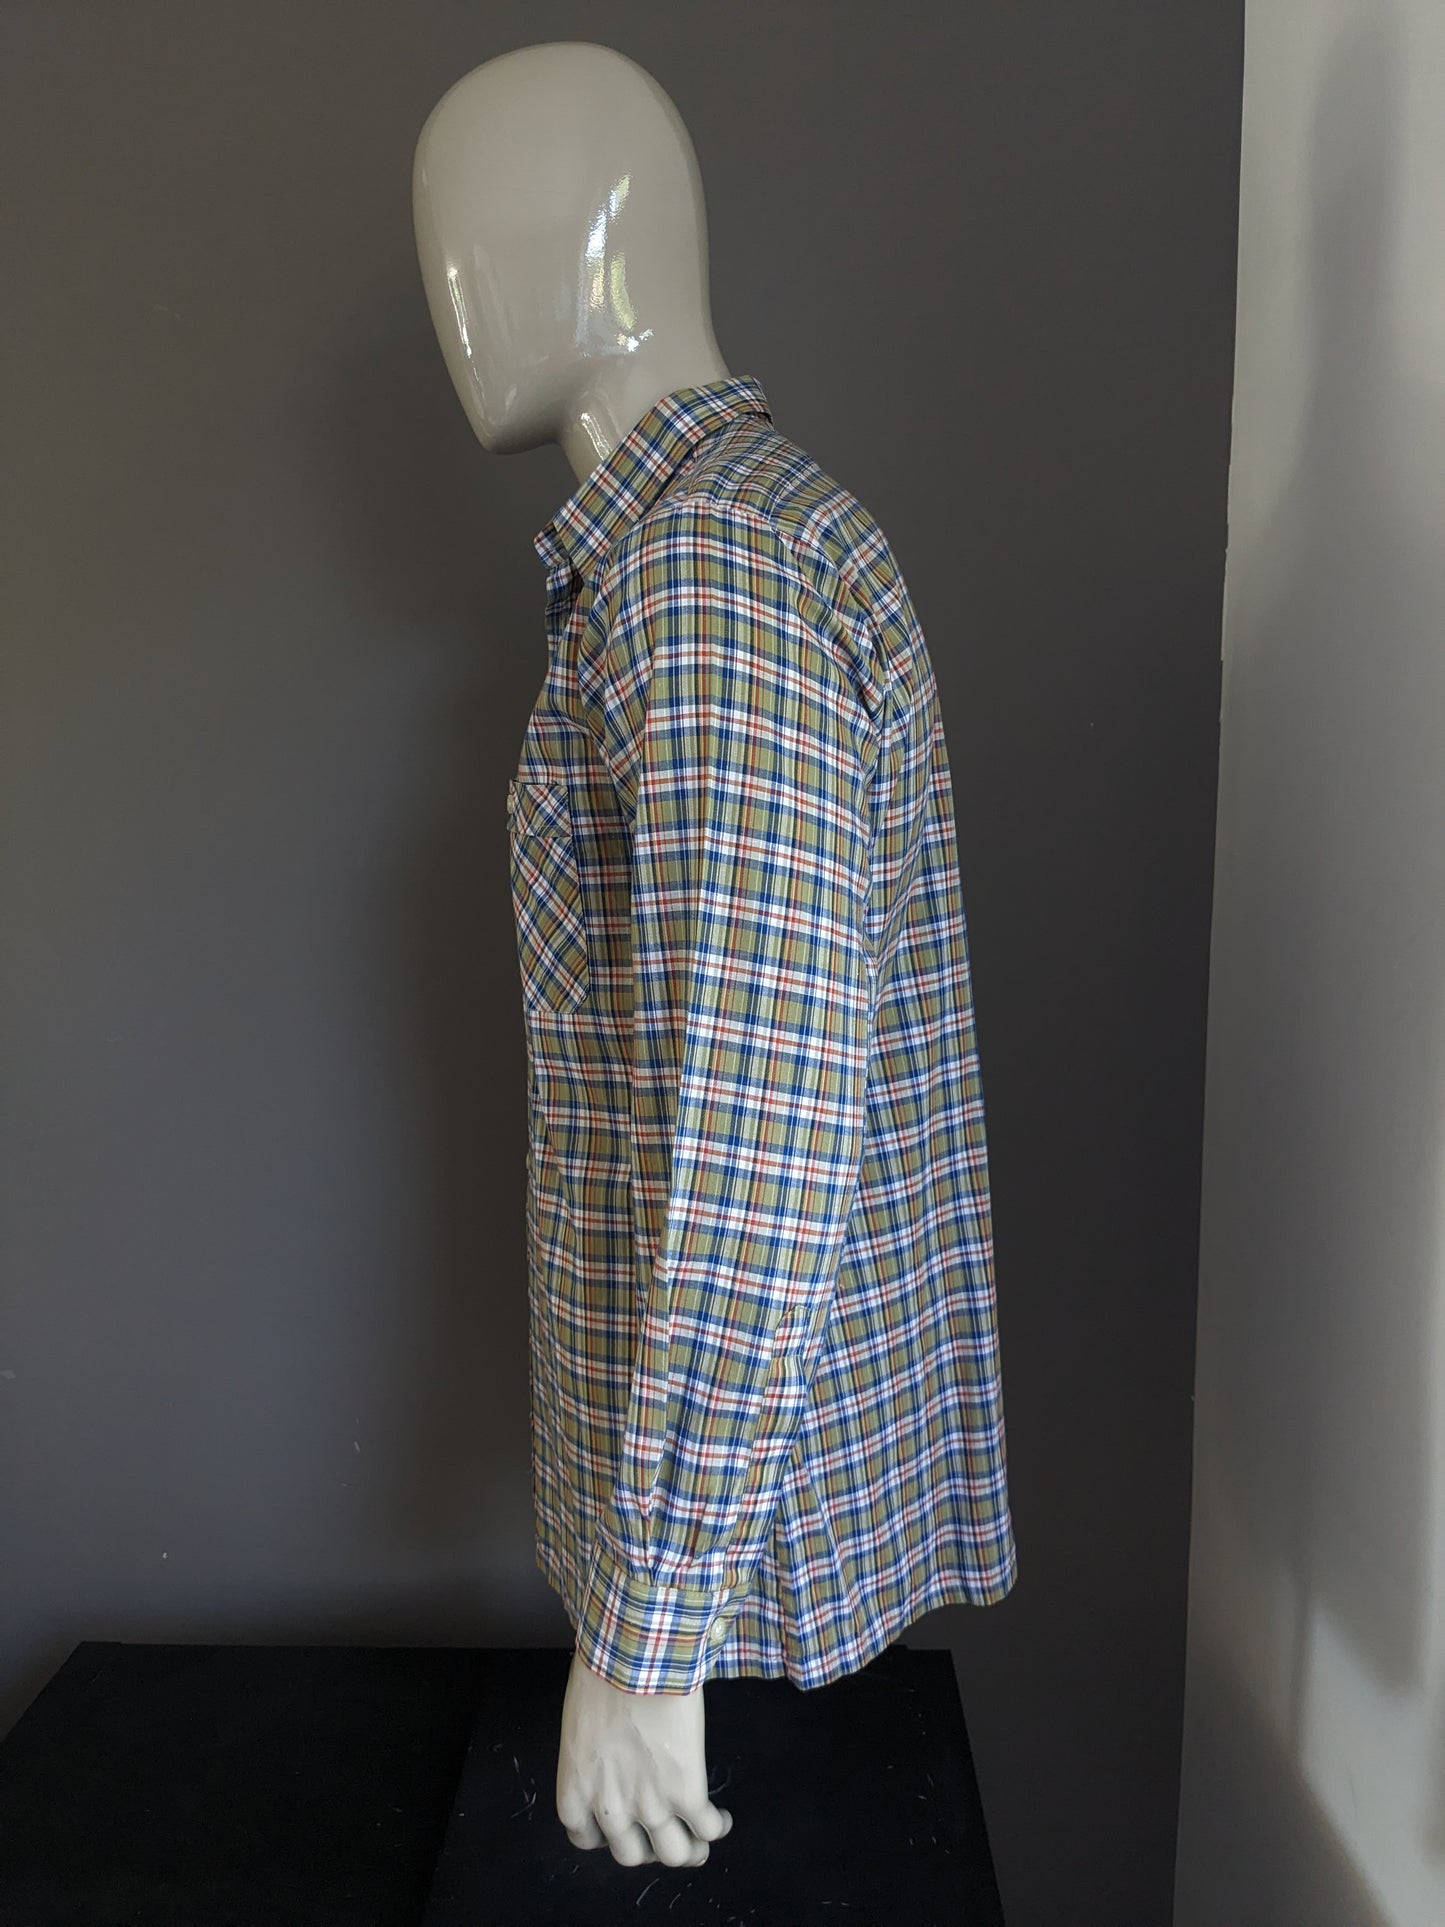 Vintage 70's Soldner overhemd. Groen Blauw Rood geruit. Maat 42 / L.